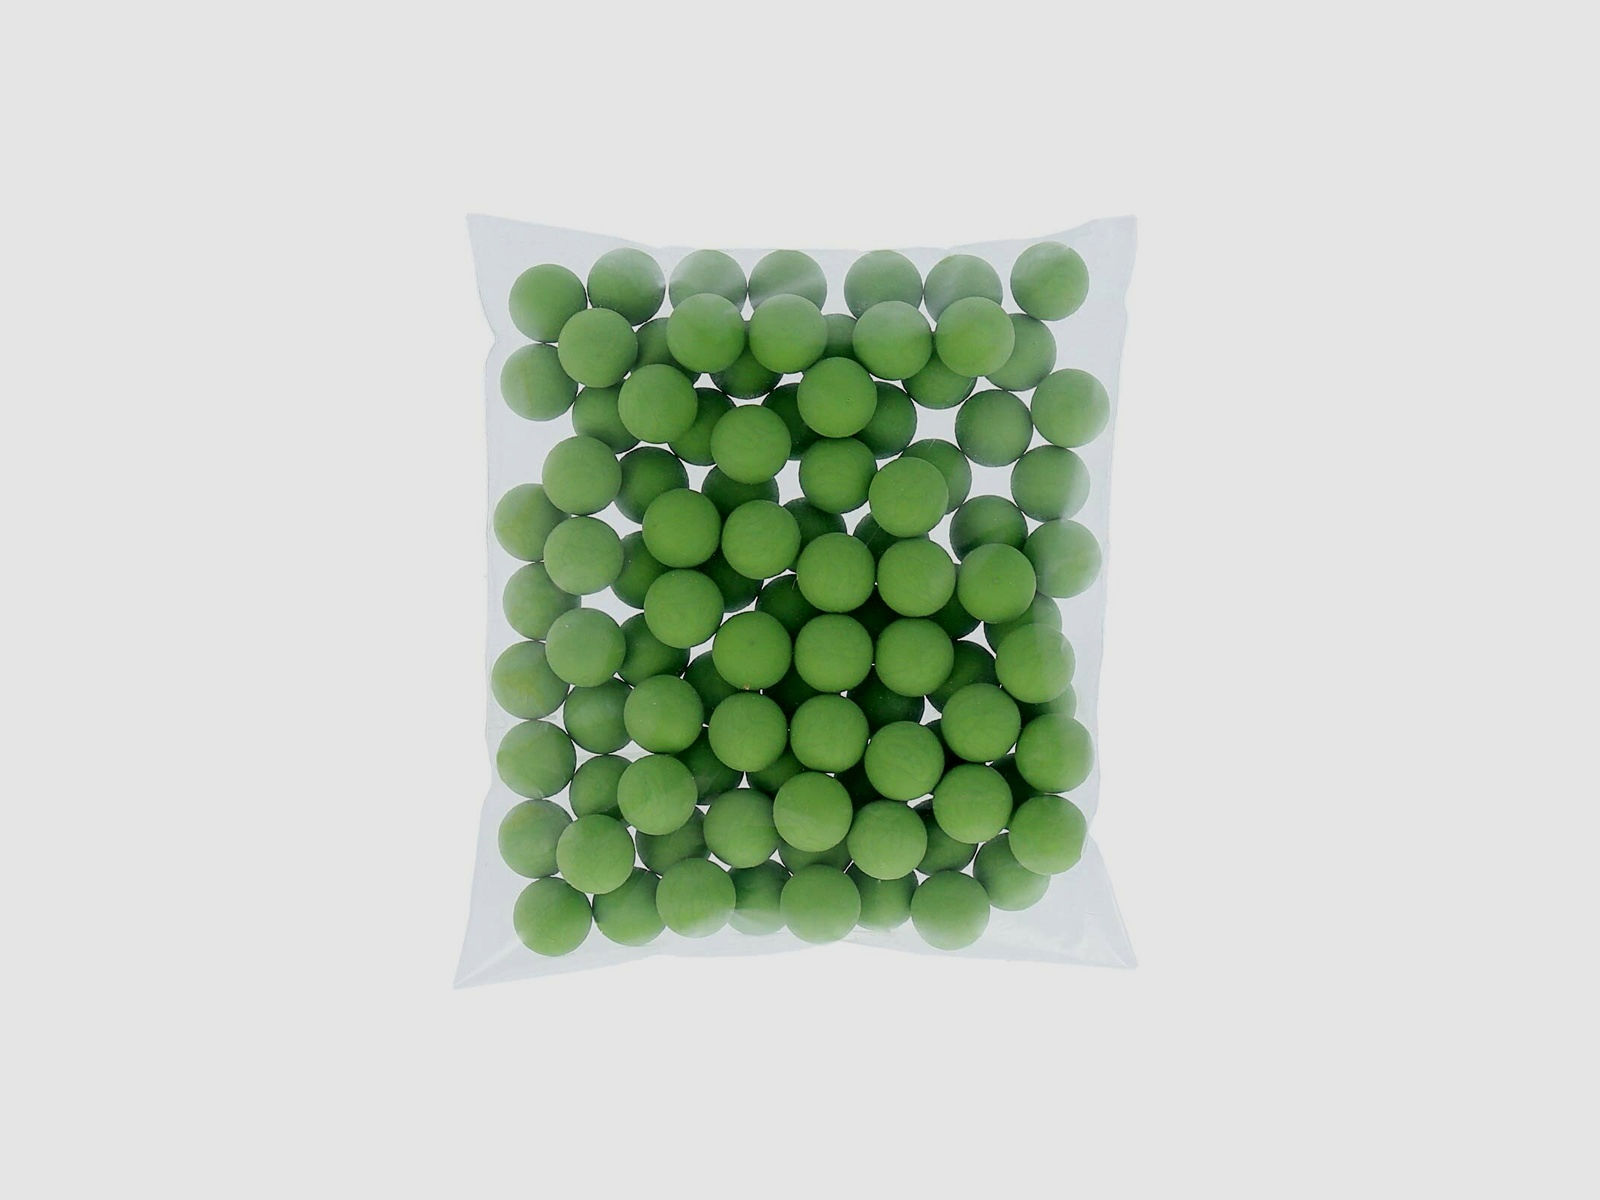 Rubberballs / Gummigeschosse Grün Kal .43 - 100 Stück